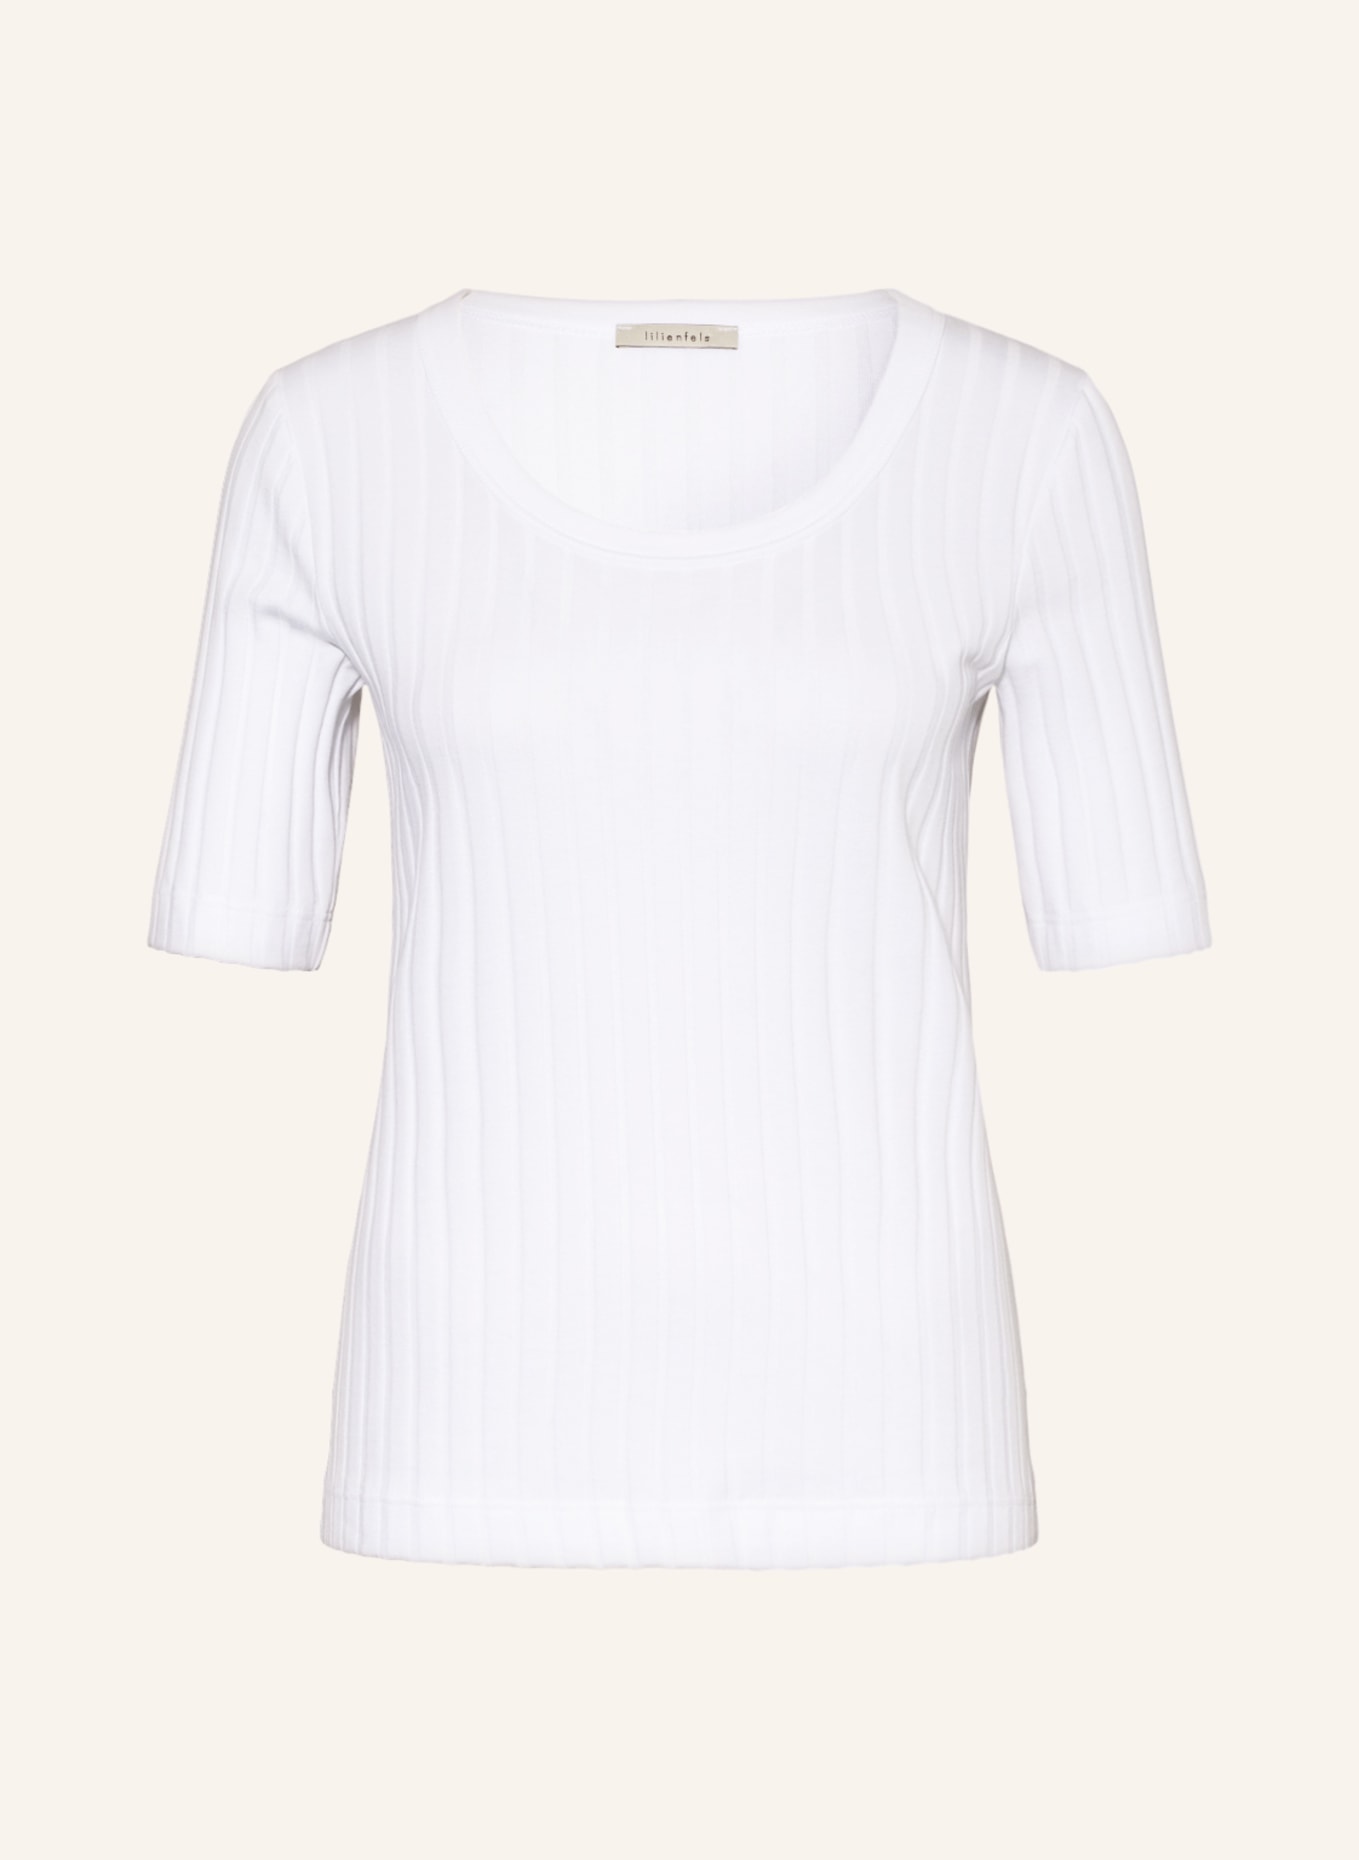 Трикотажная рубашка lilienfels, белый